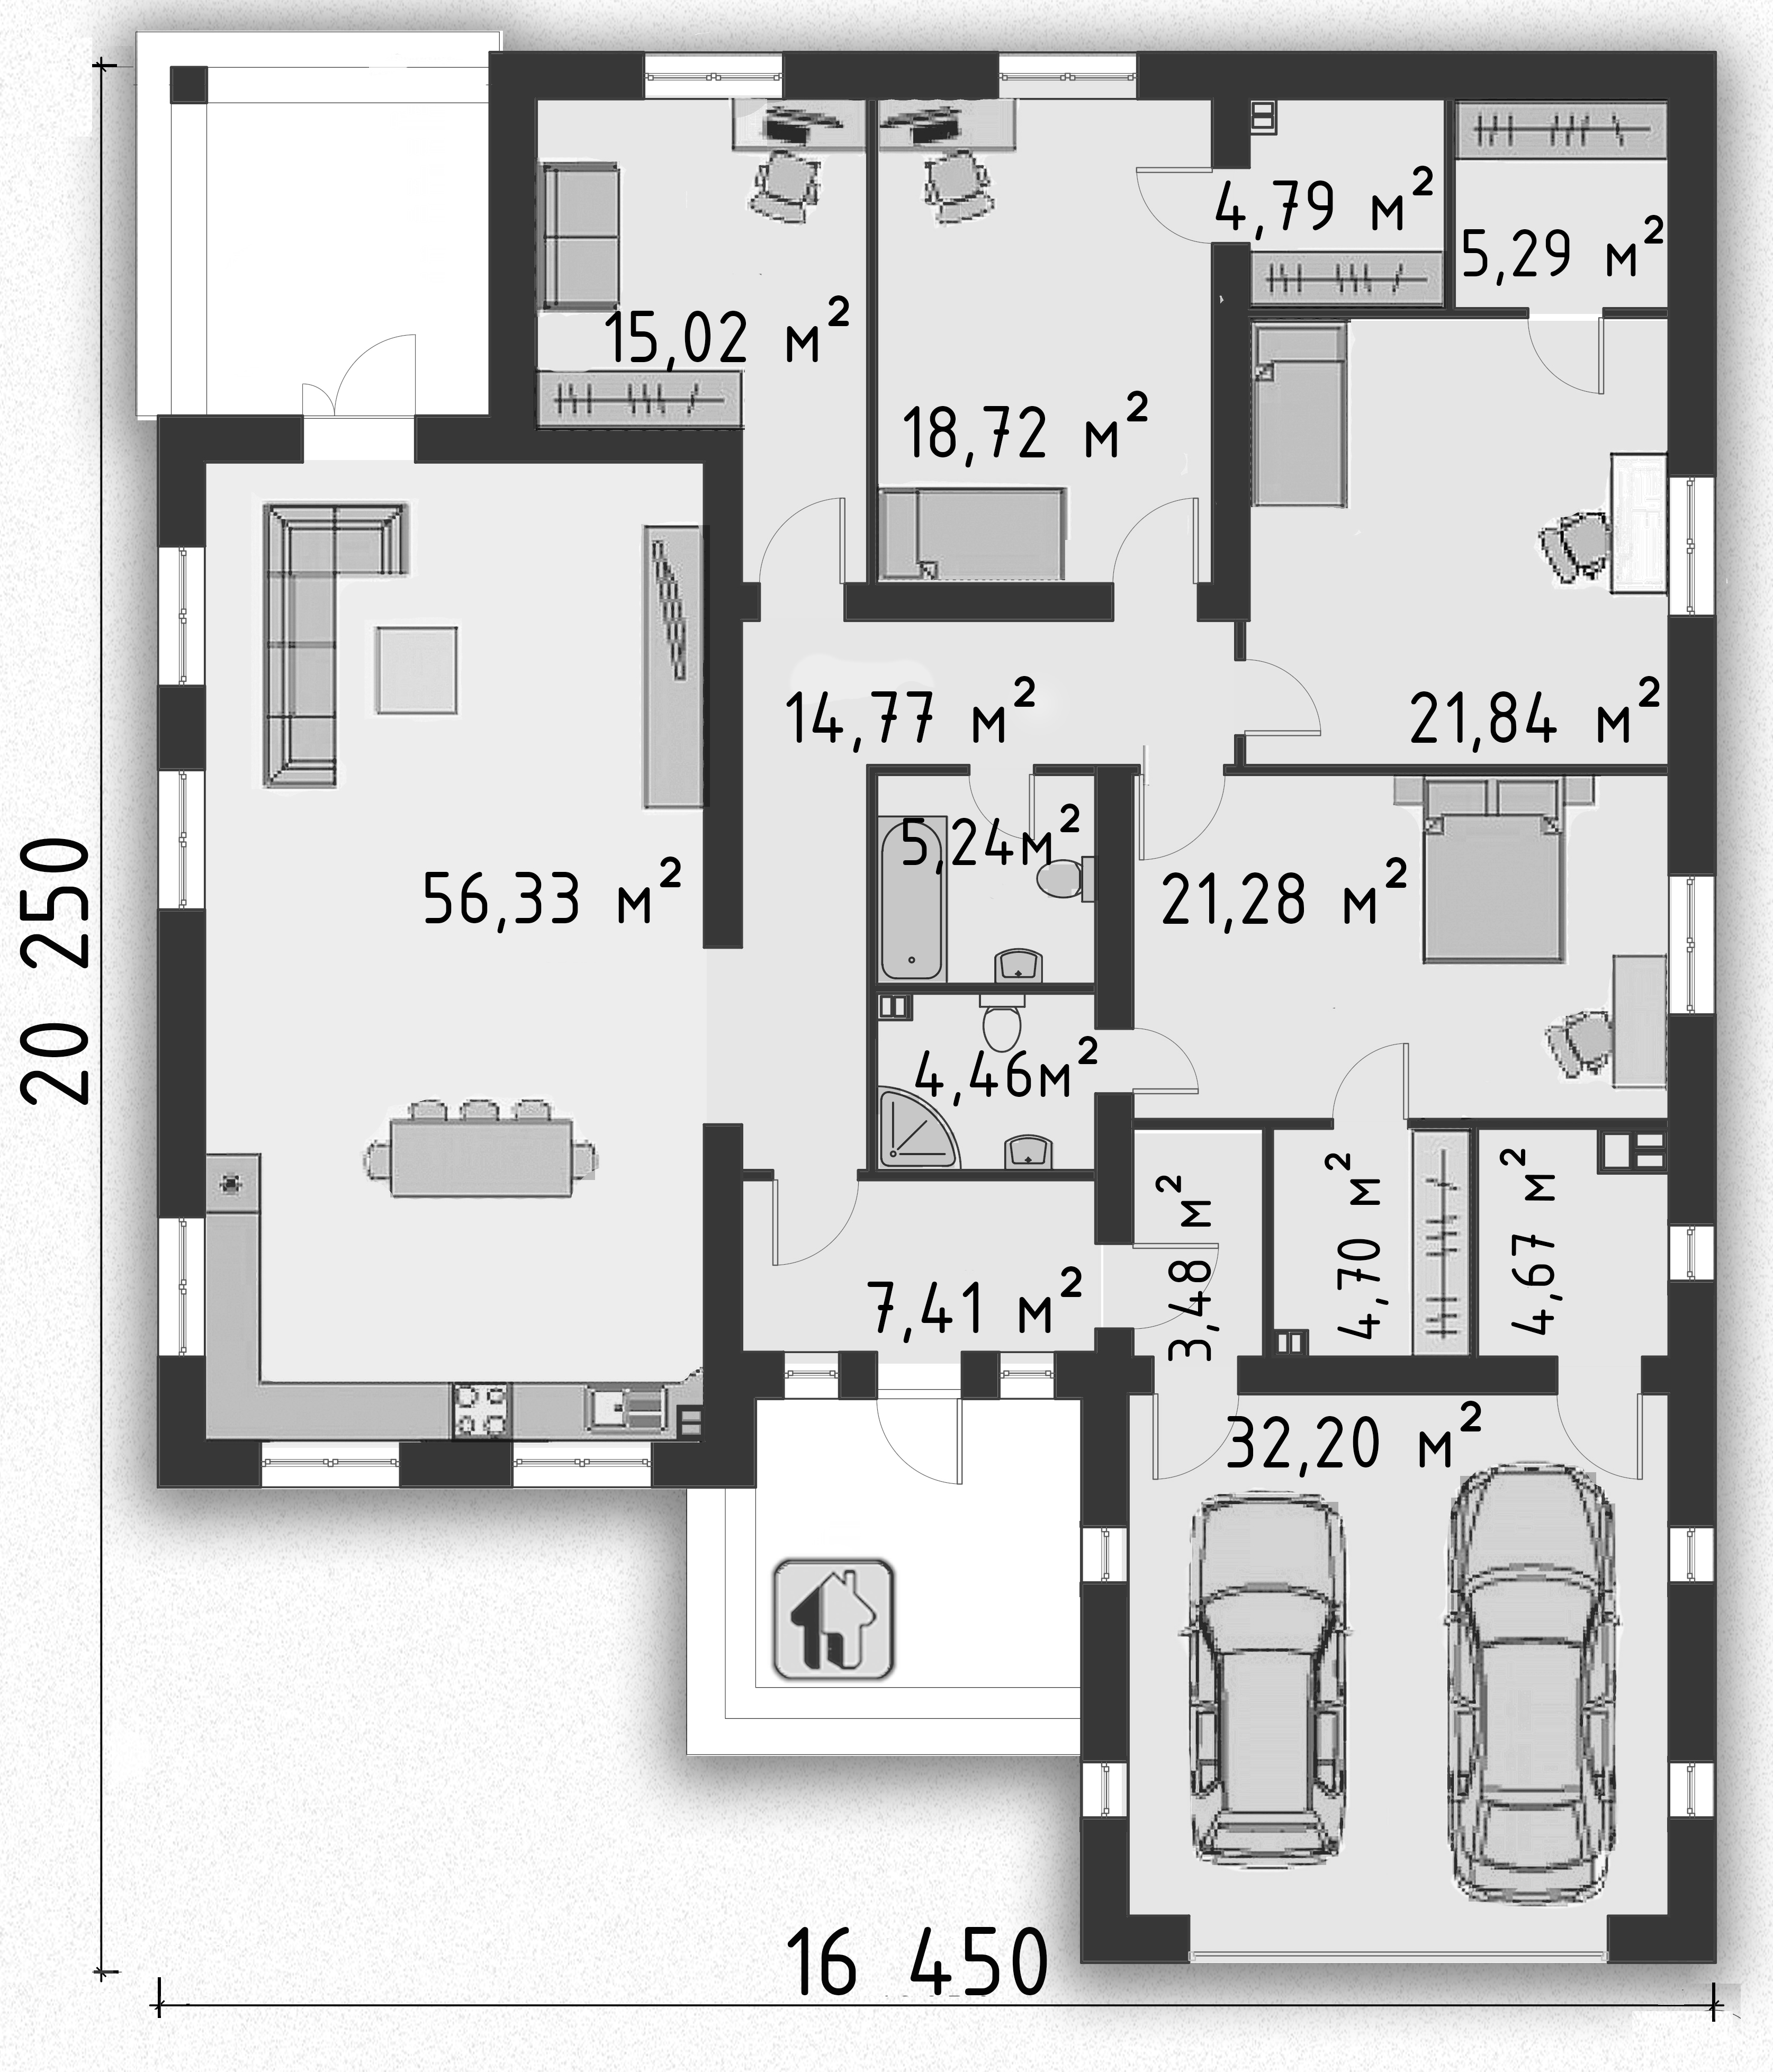 Схема первого этажа дома ZH14